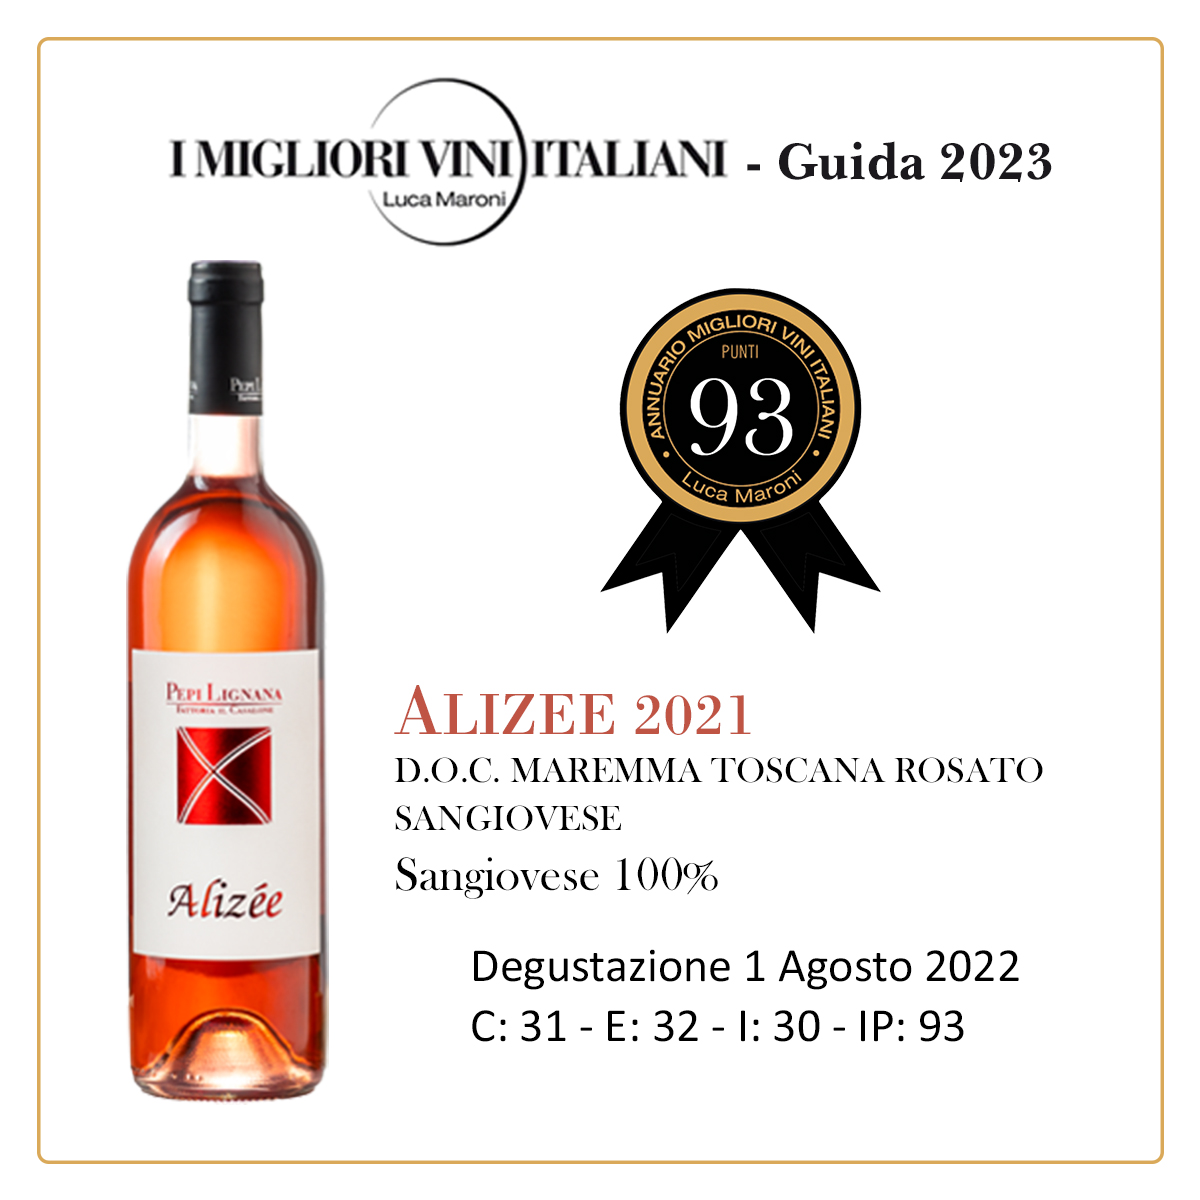 Luca Maroni Annuario Migliori Vini Guida 2023 Alizee Pepi Lignana Wine